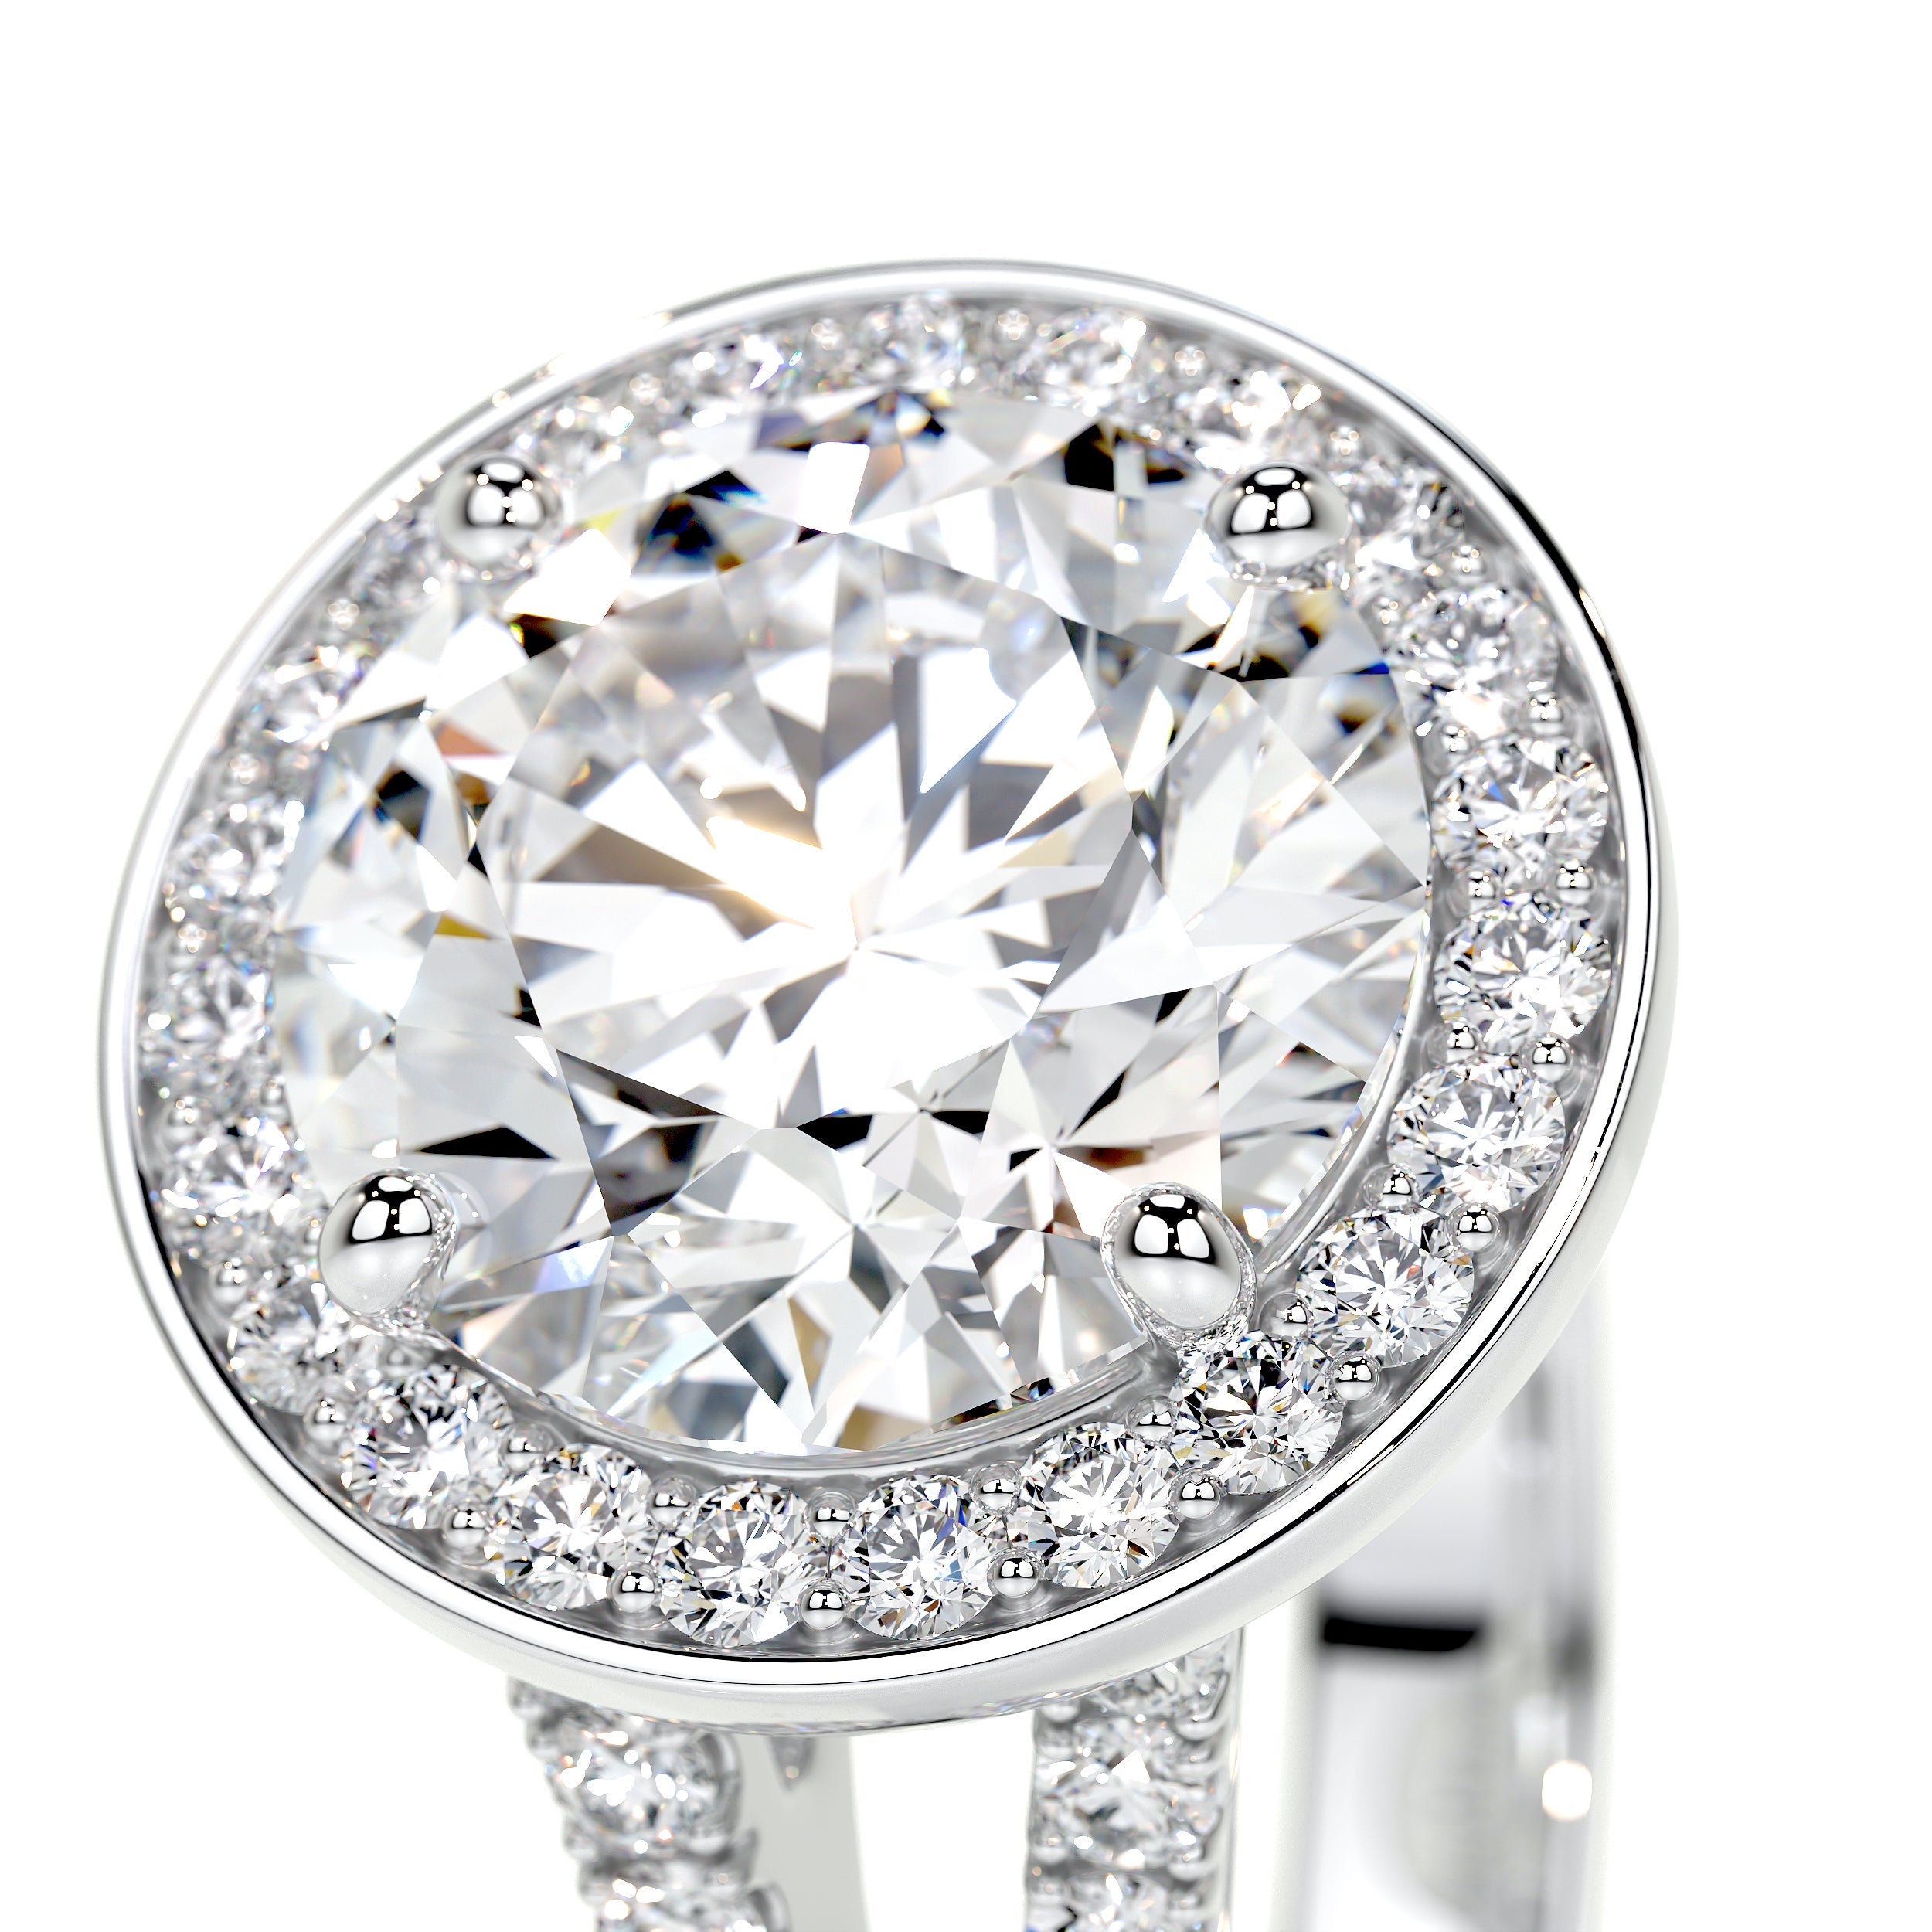 Camilla Lab Grown Diamond Ring   (2.75 Carat) -14K White Gold